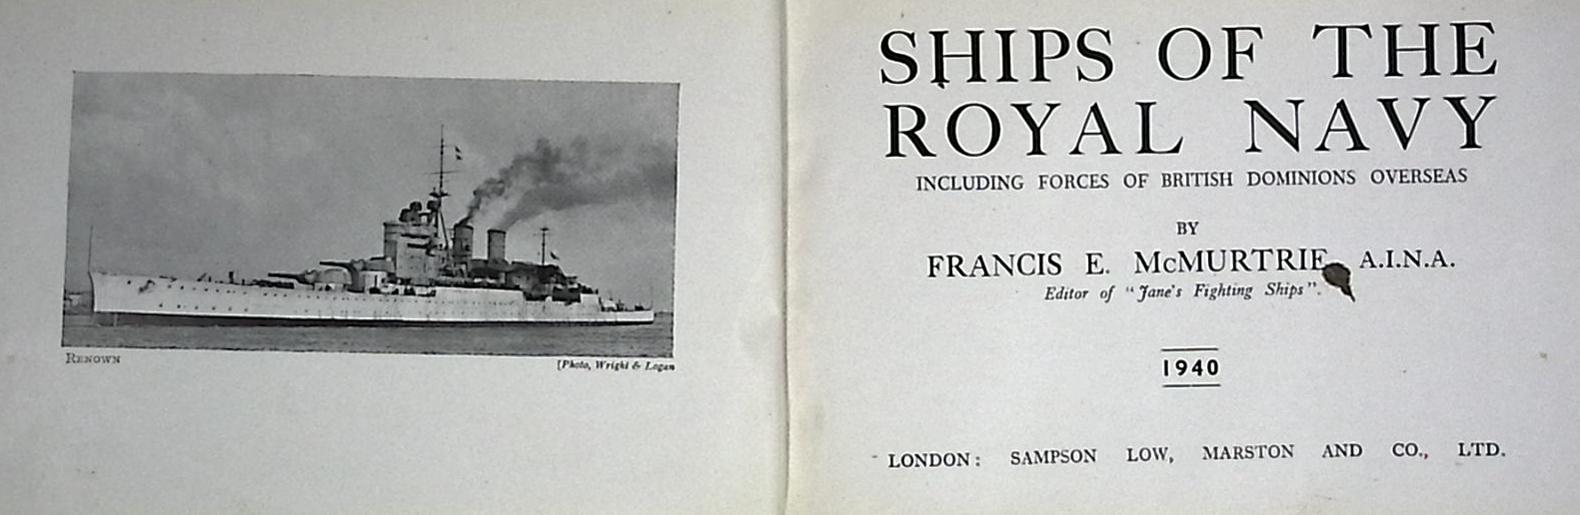 Ships of the Royal Navy. 1940.